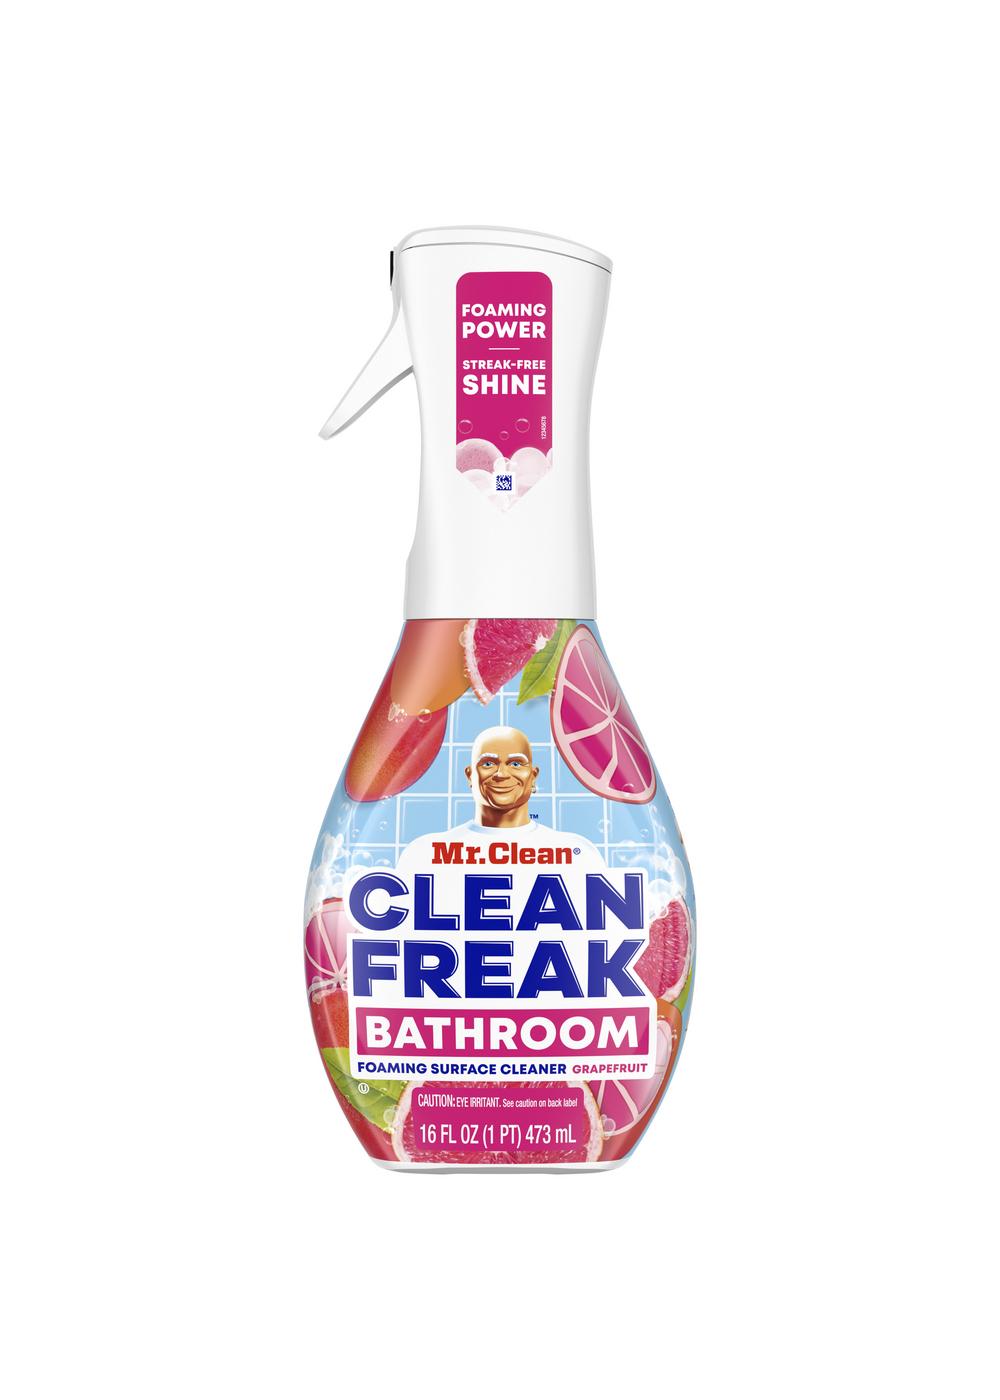 Mr.Clean Clean Freak Grapefruit Bathroom Foaming Surface Cleaner; image 1 of 2